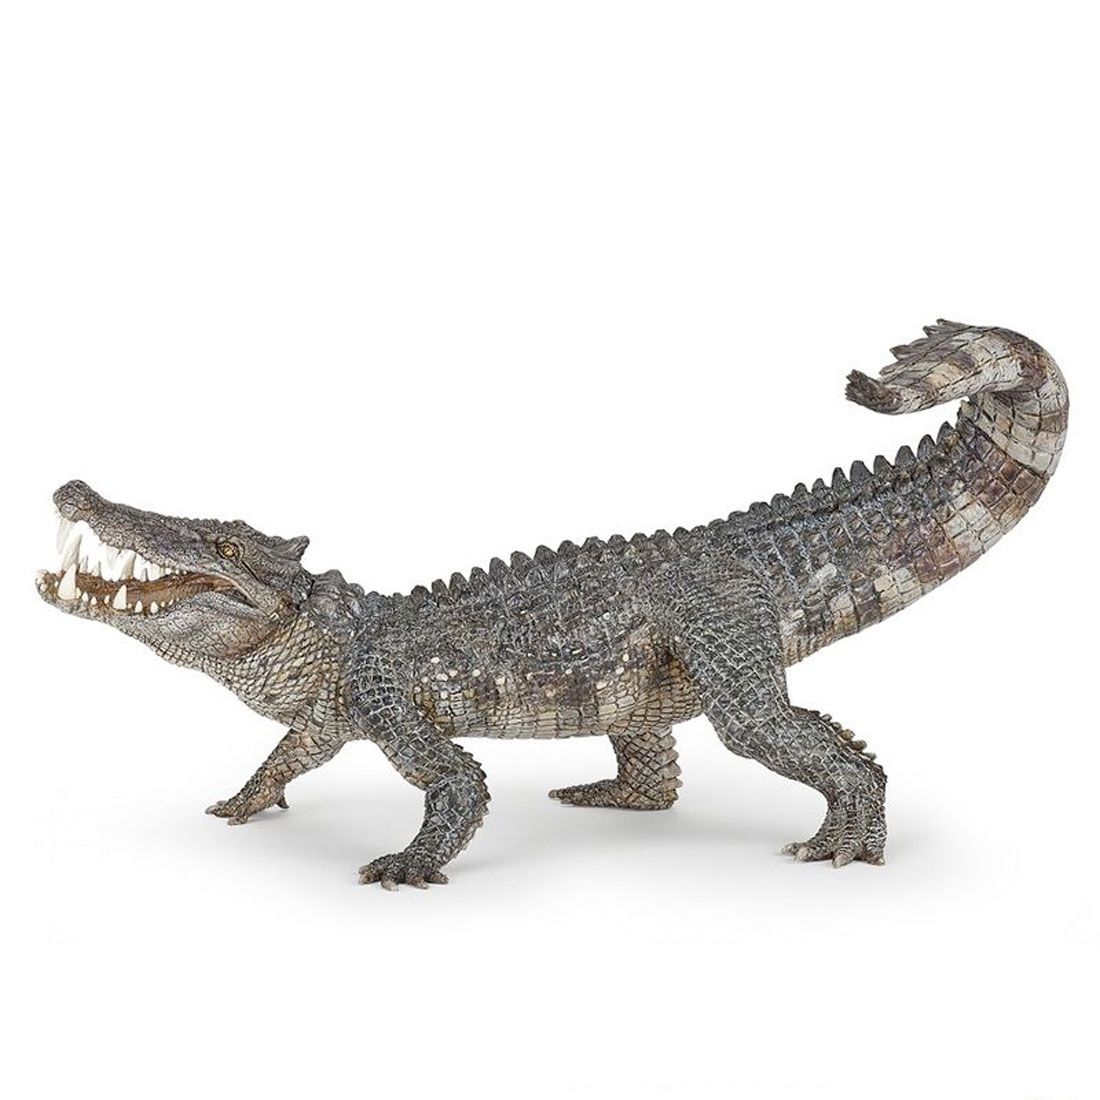 Papo Kaprosuchus krokodille med bevægelige kæber, der kan åbnes og lukkes.